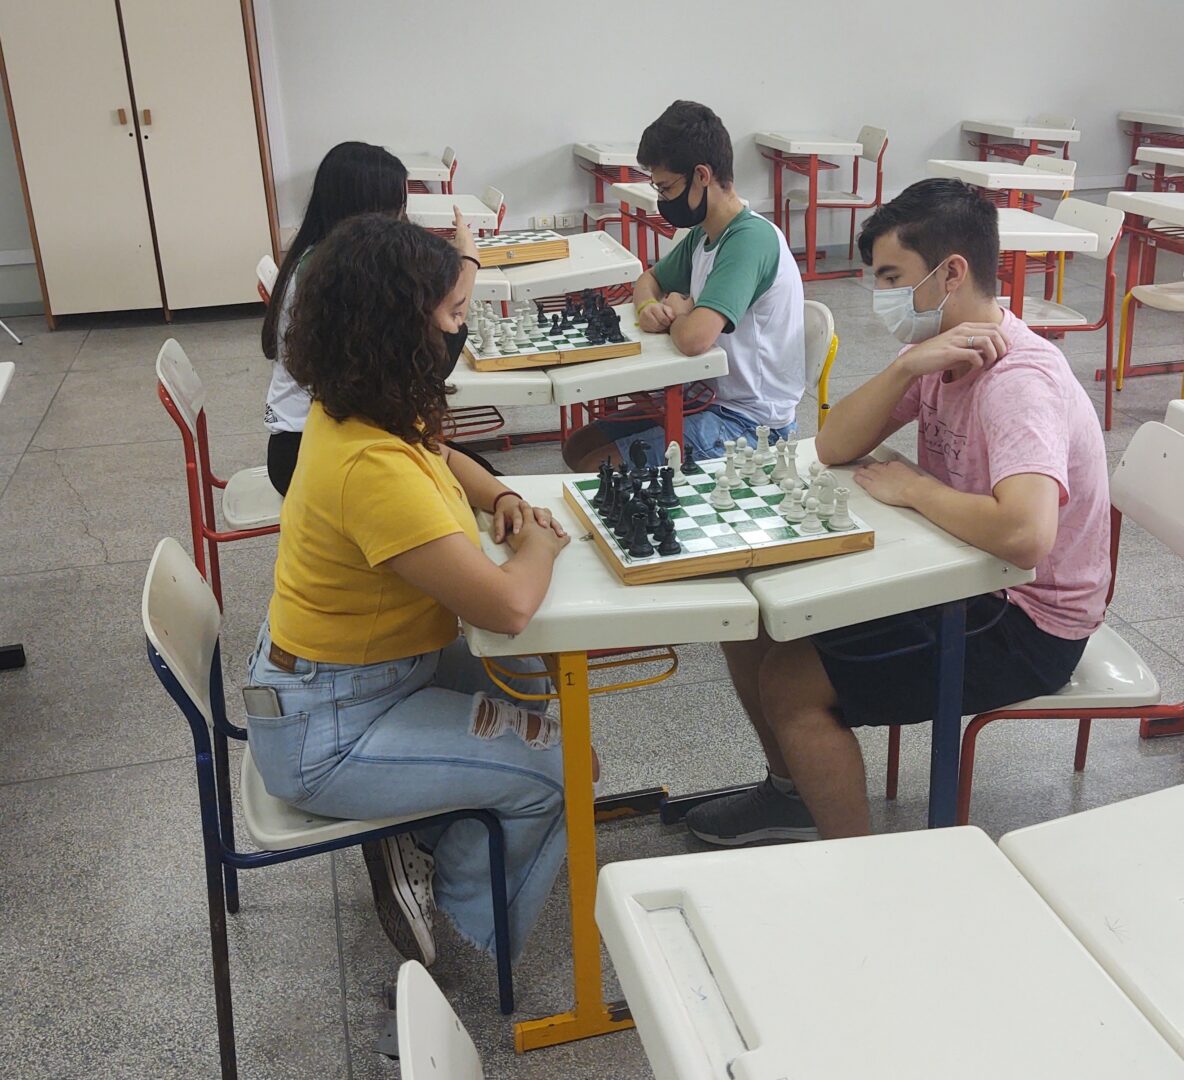 Sala de aula do clube de xadrez